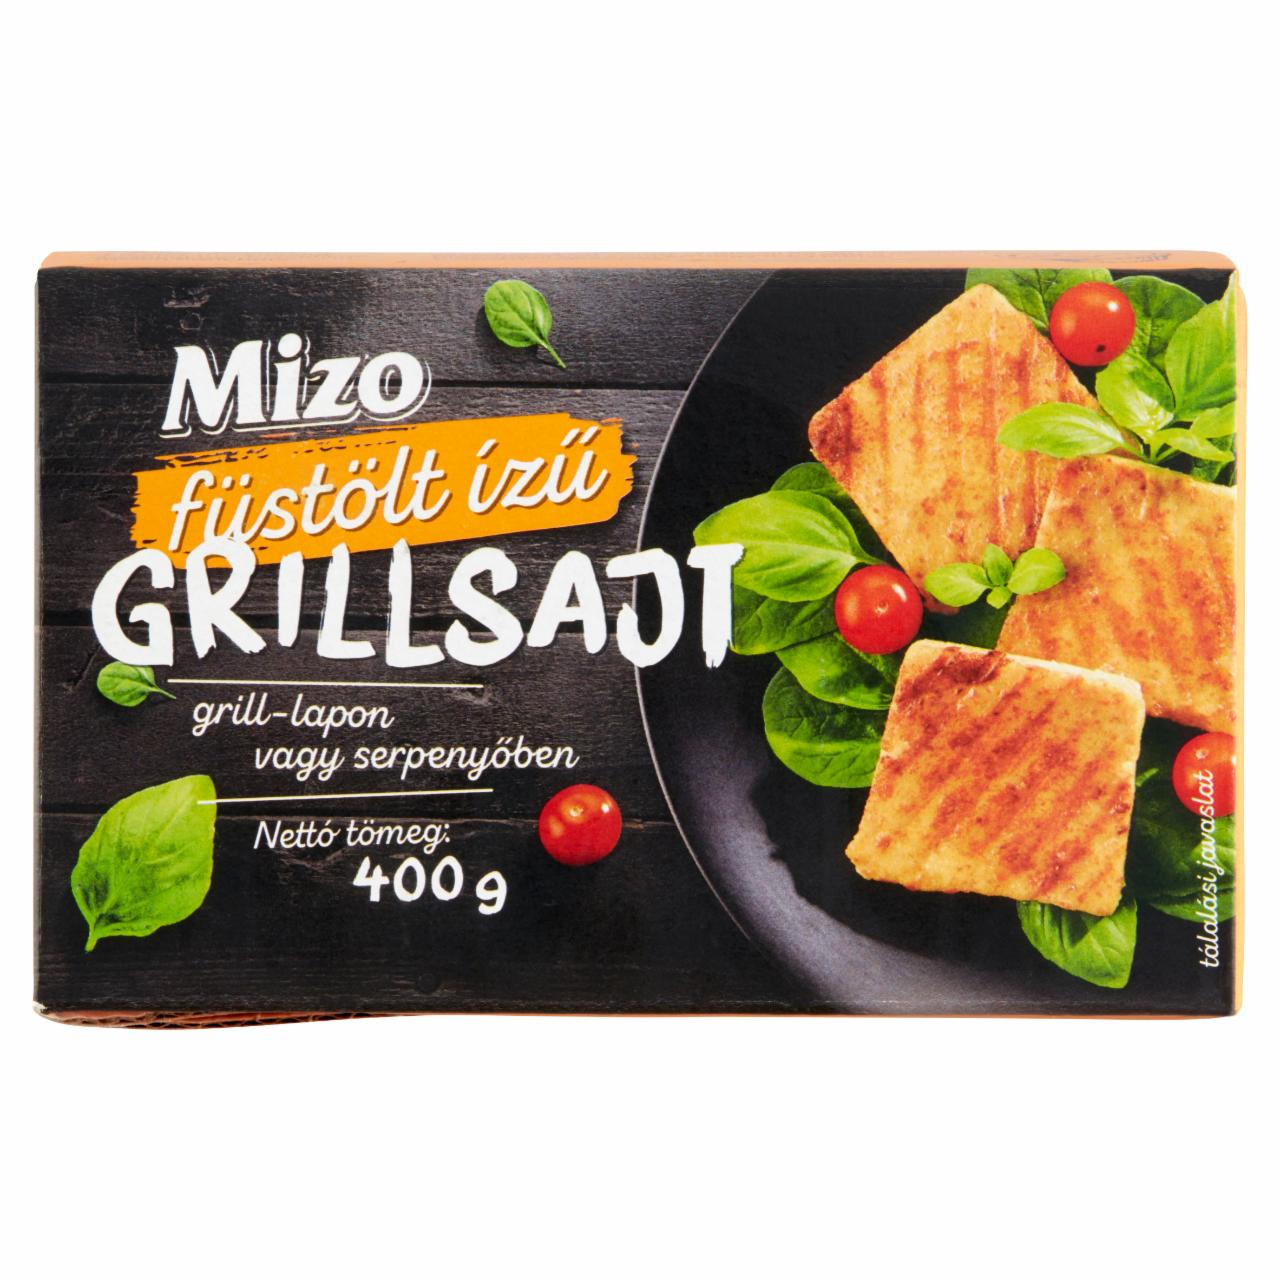 Képek - Mizo füstölt ízű grillsajt 400 g